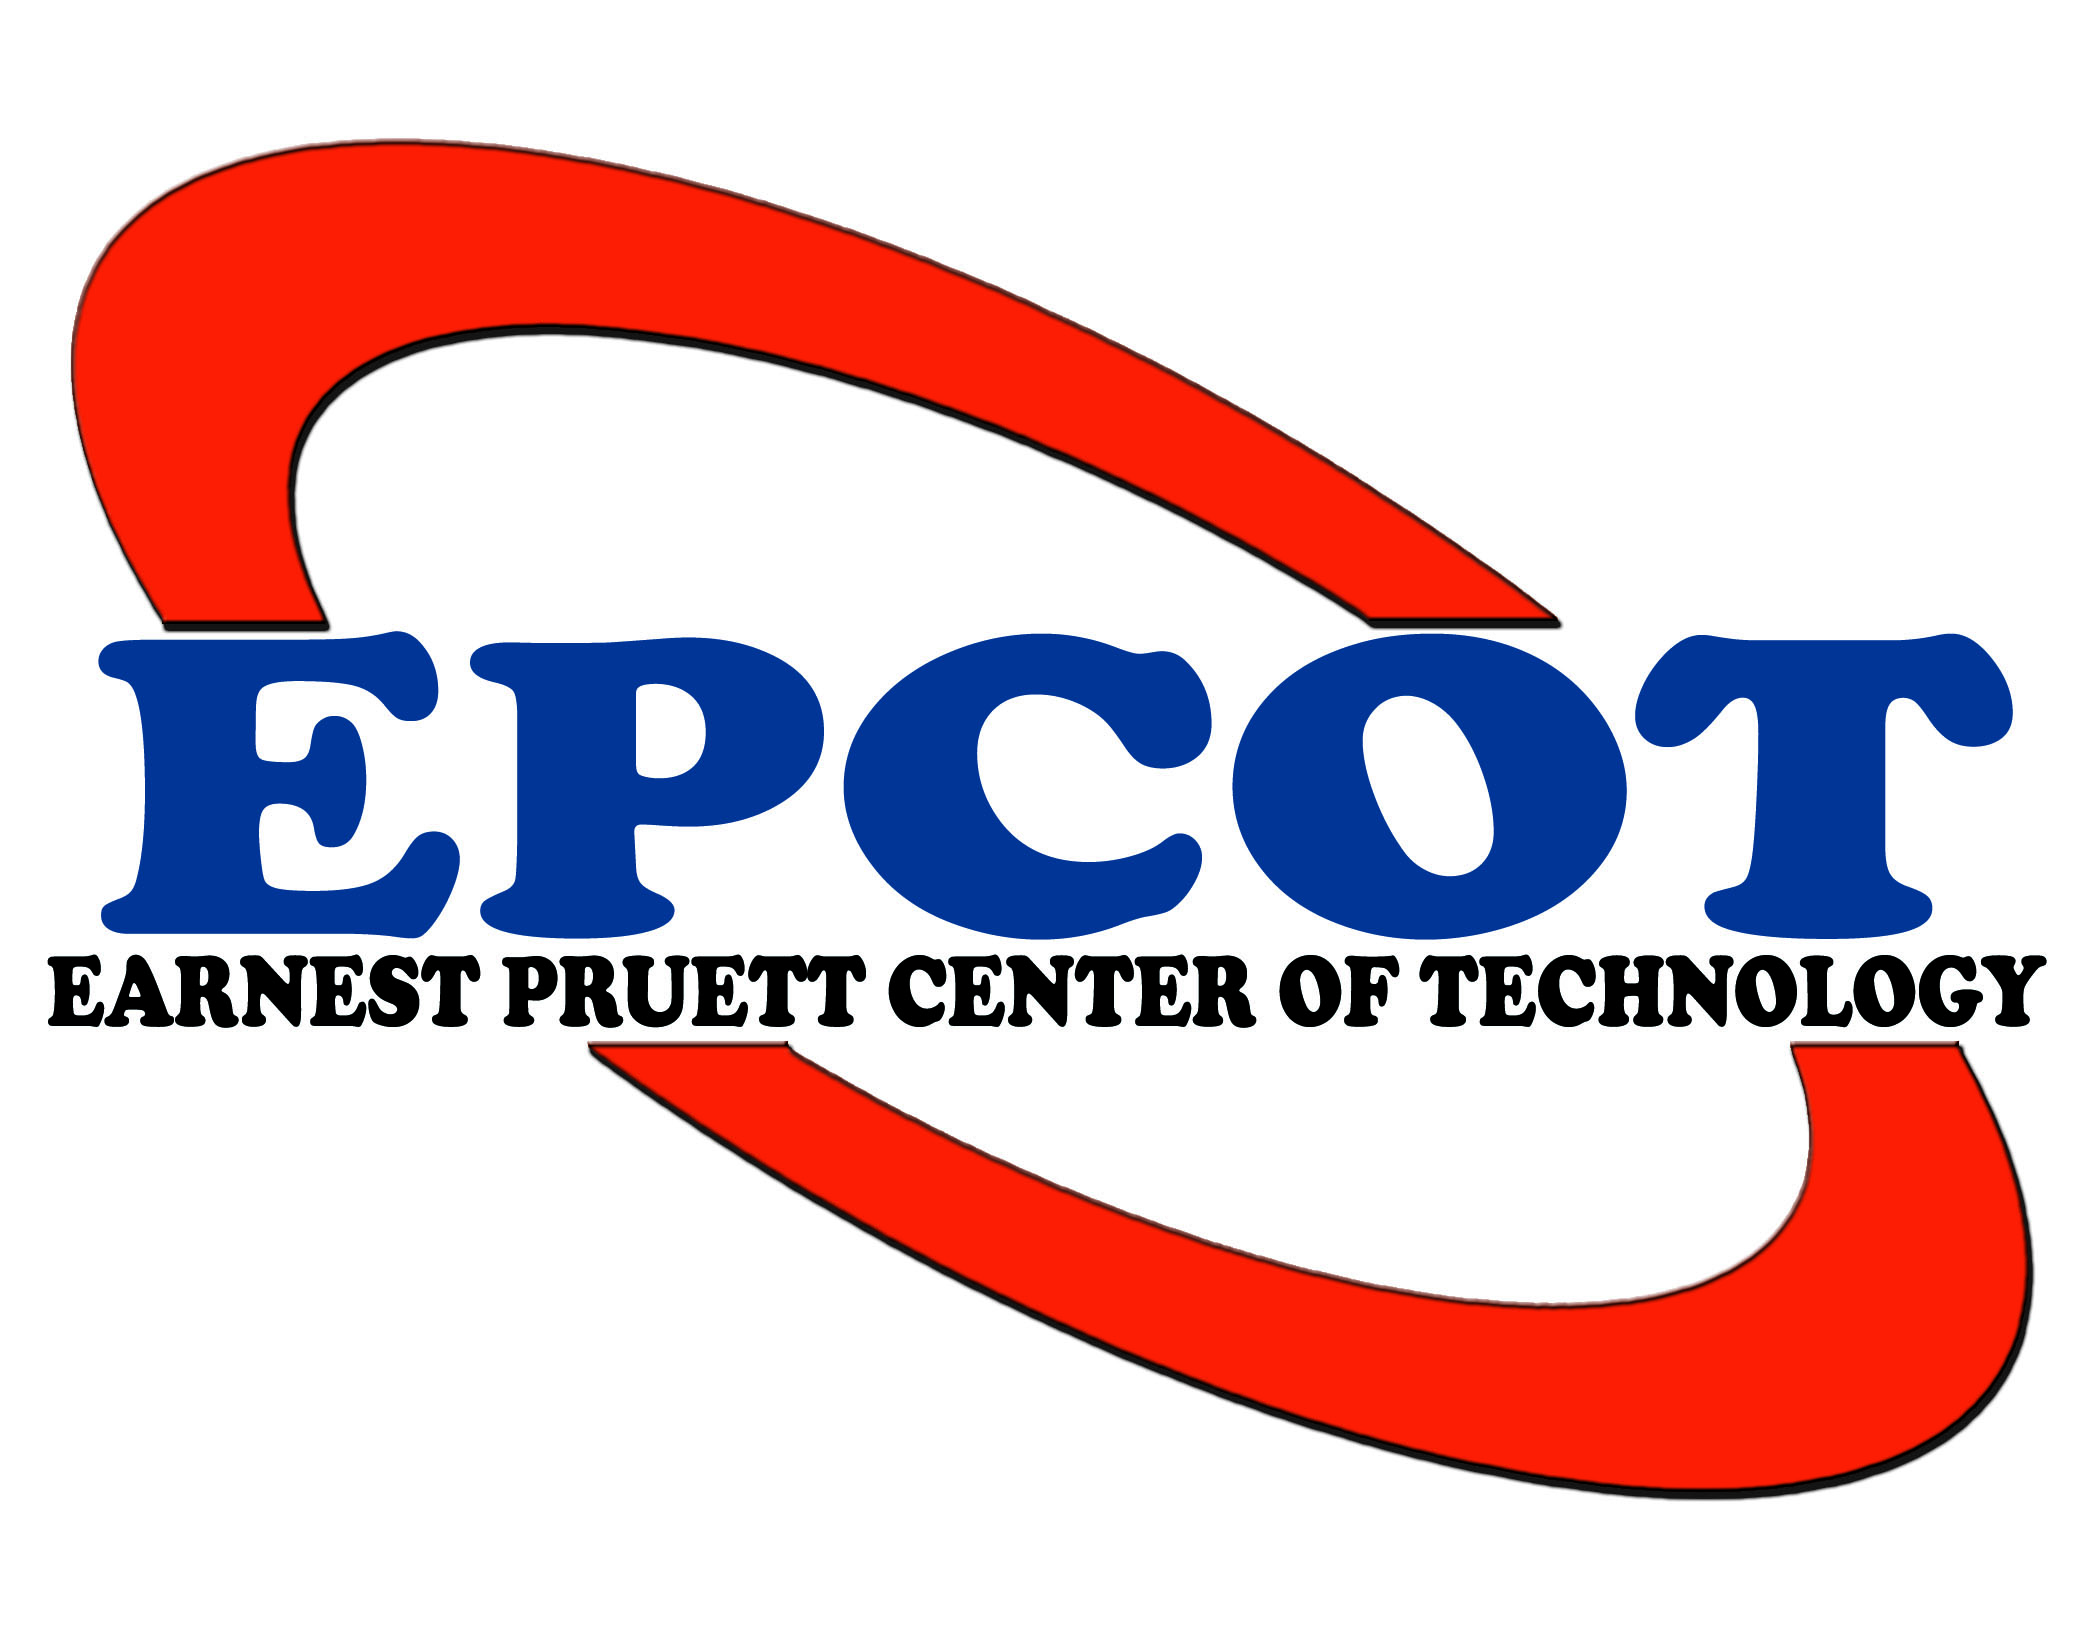 Ernest Pruett Center of Technology